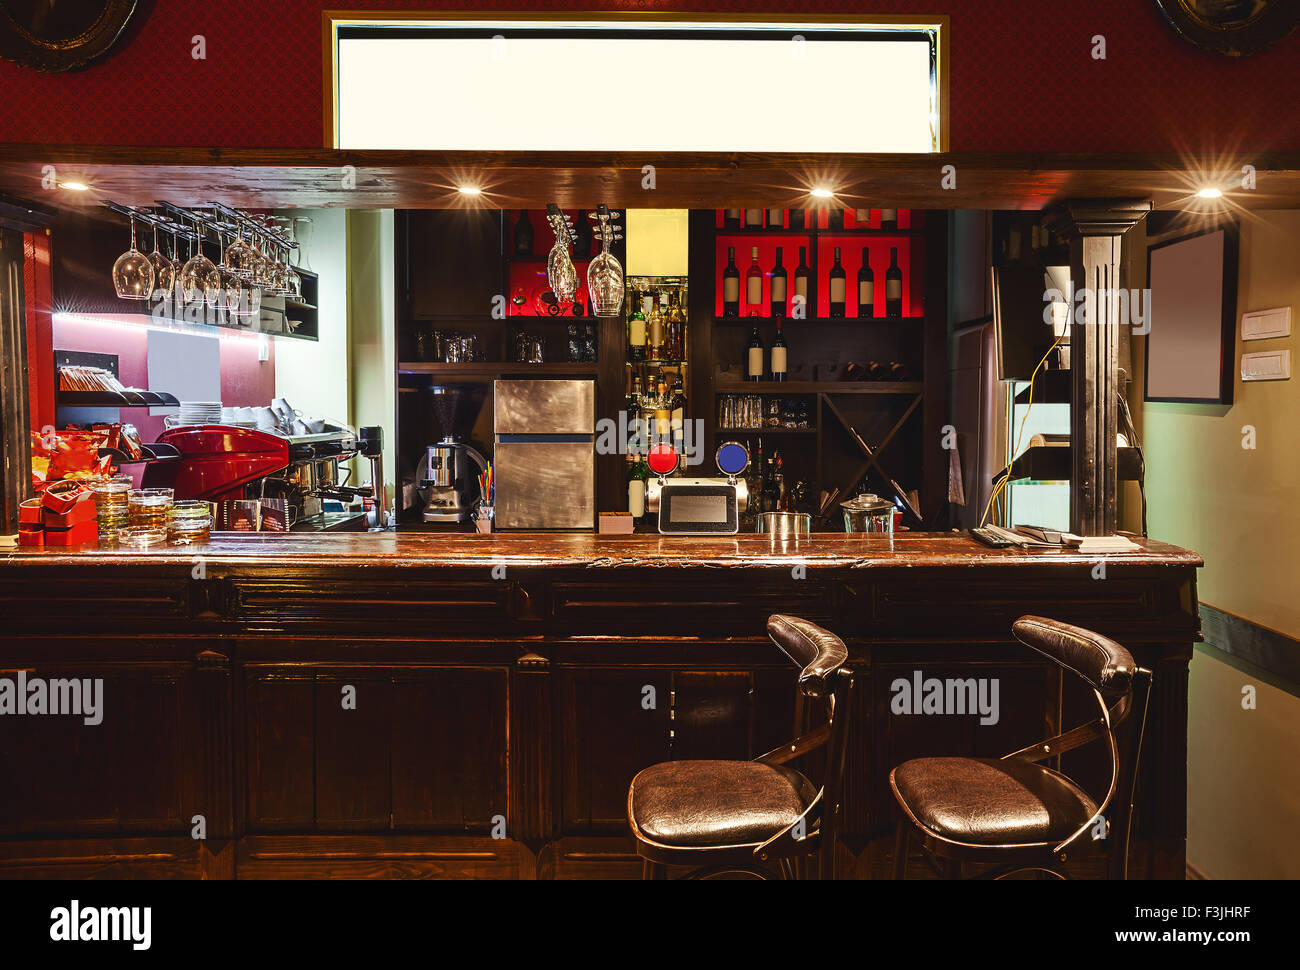 Interieur eines modernen Cafés im retro-Stil, Nachtaufnahme. Beleuchtung, Möbel und architektonischen Details. Stockfoto